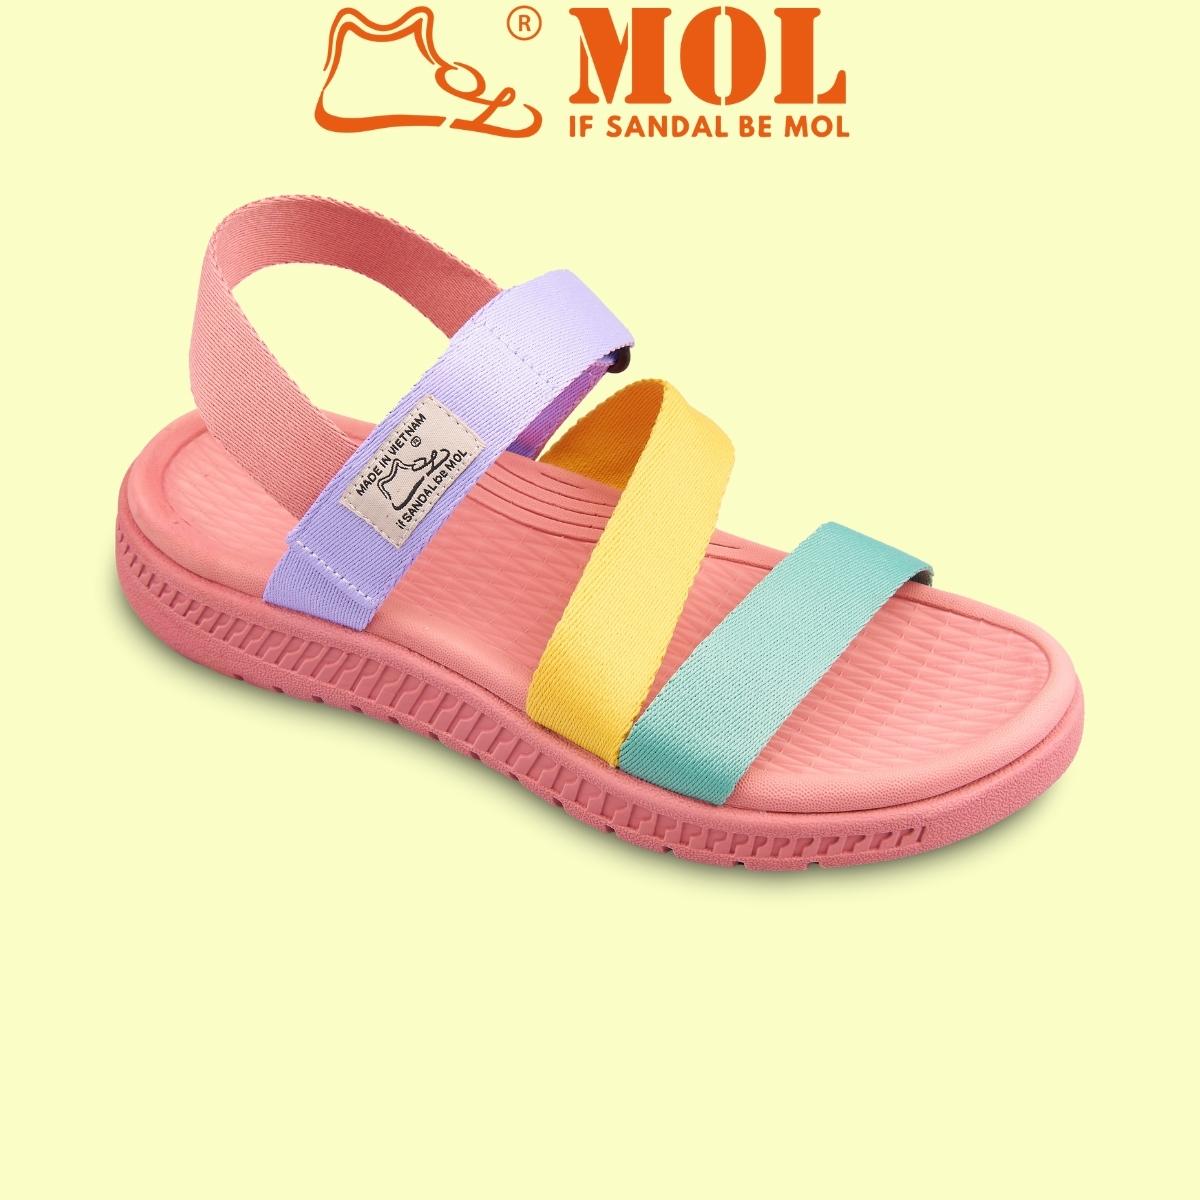 Giày sandal nữ hiệu MOL MS2 thích hợp đi học đi làm